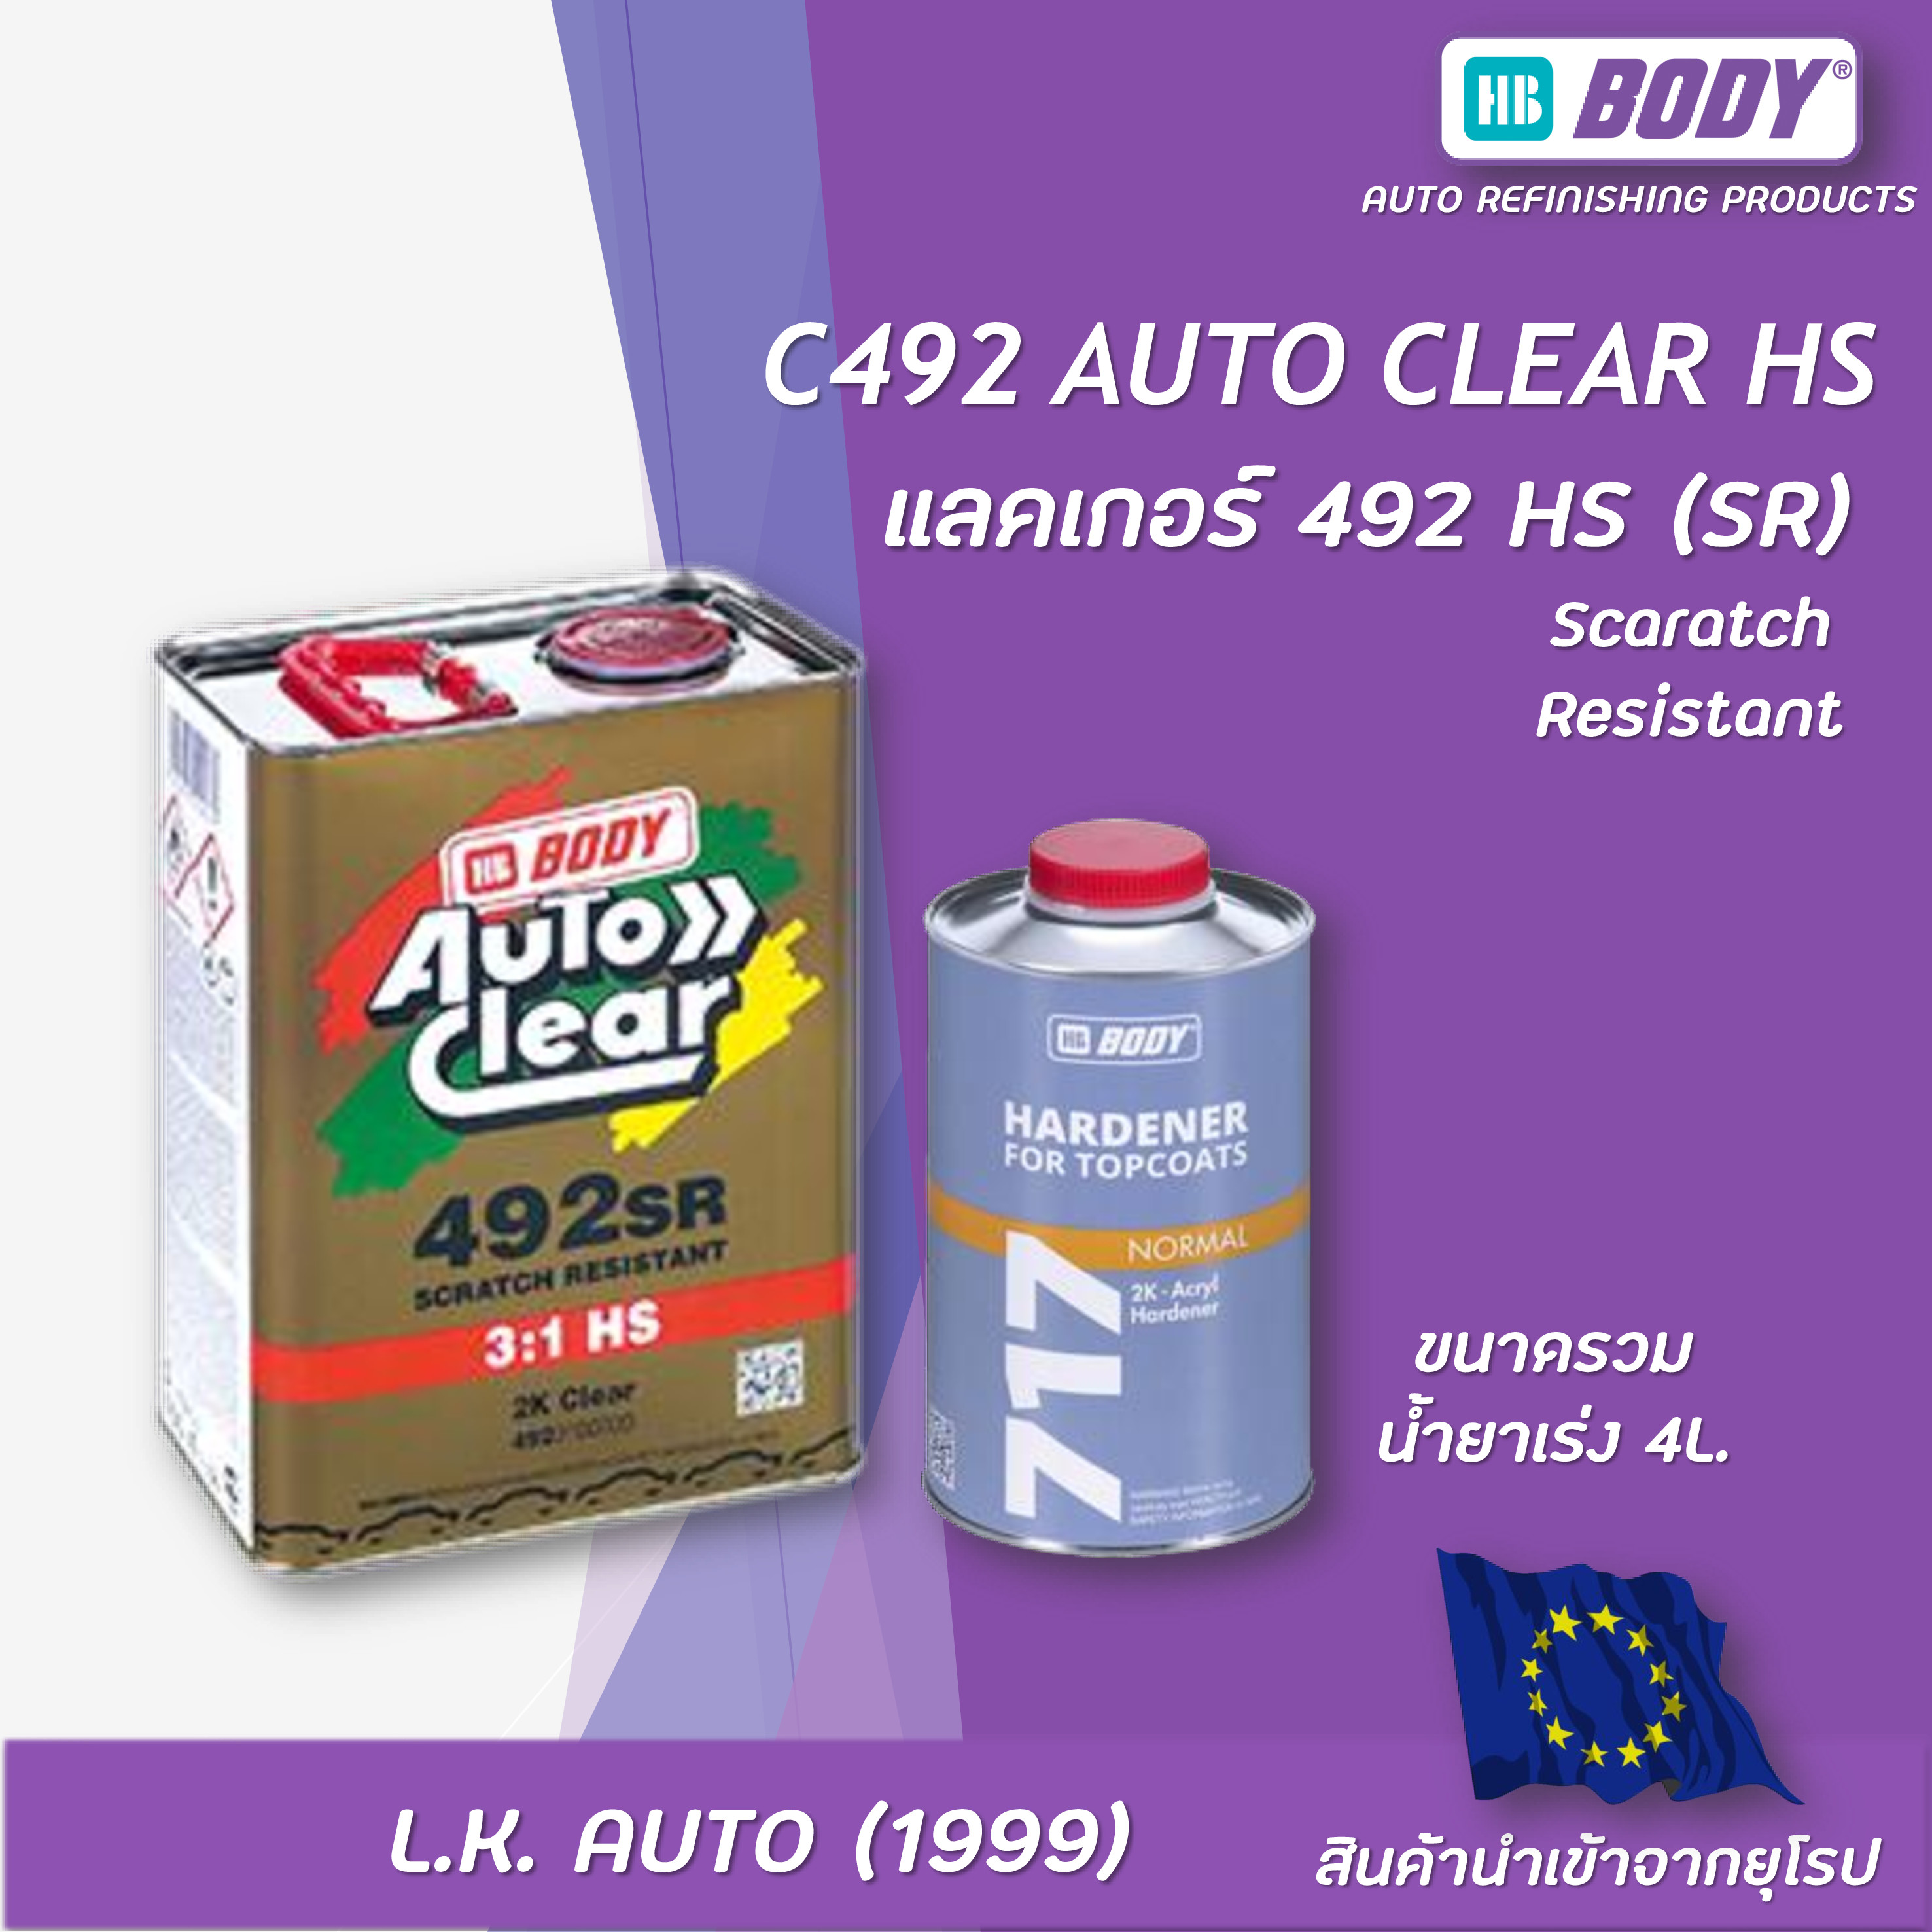 C492 AUTO CLEAR HS SR 3:1